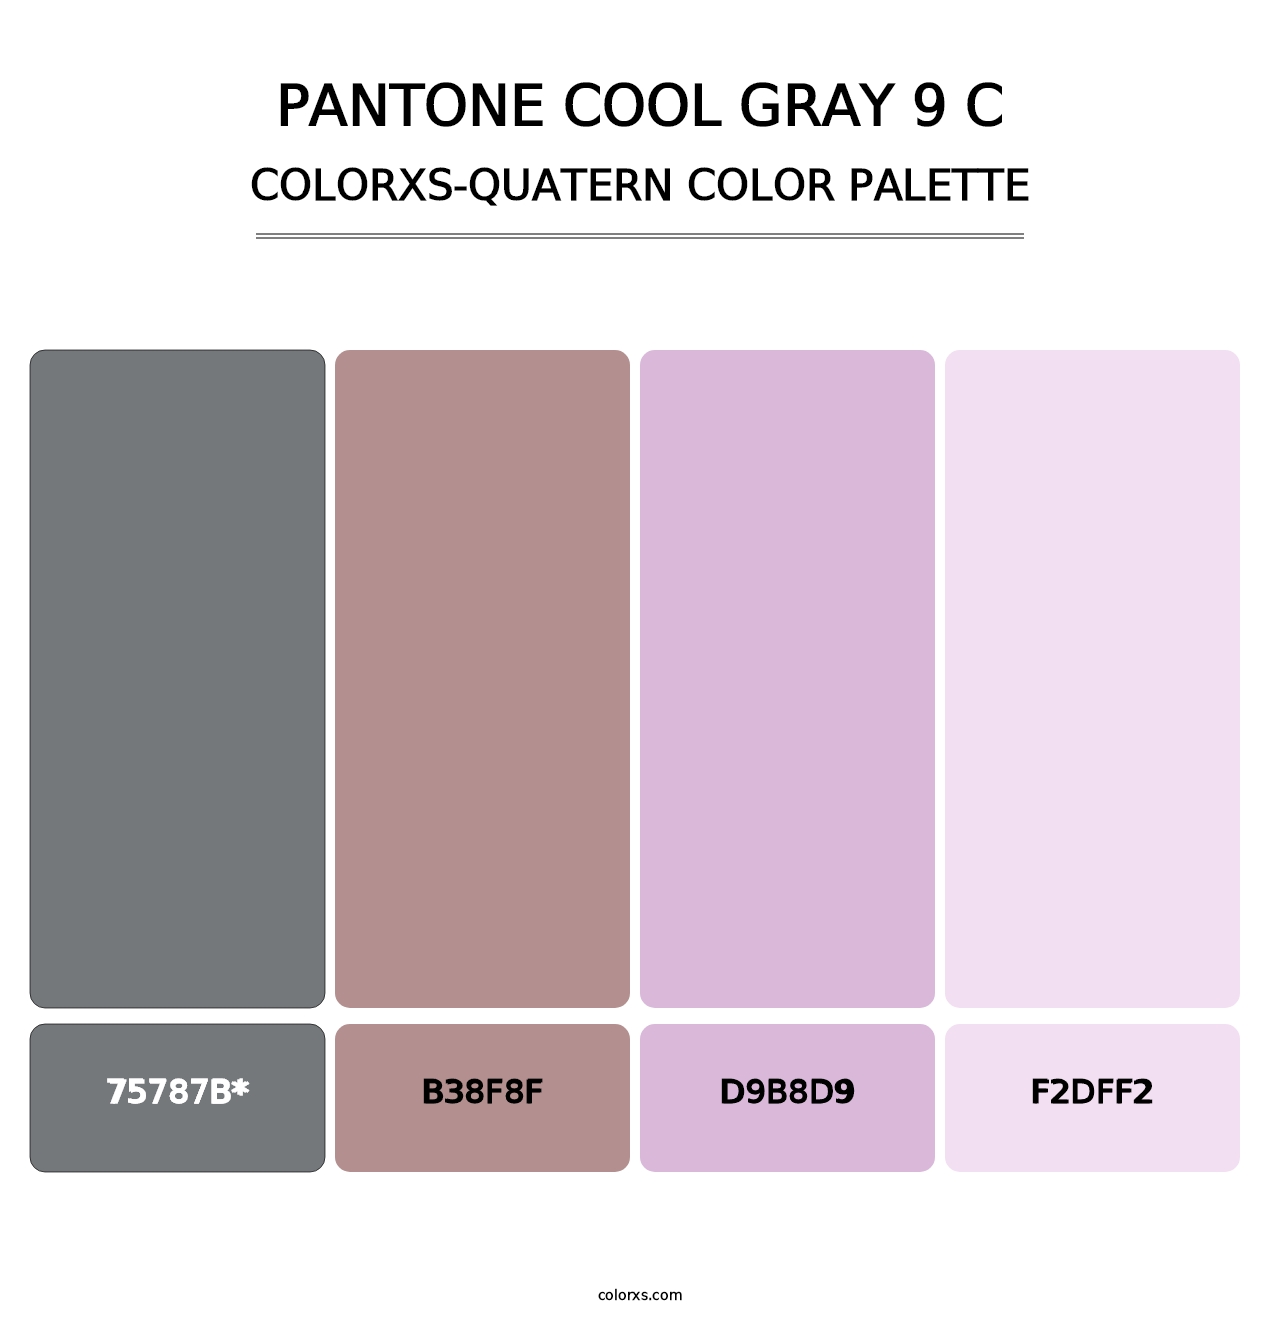 PANTONE Cool Gray 9 C - Colorxs Quatern Palette